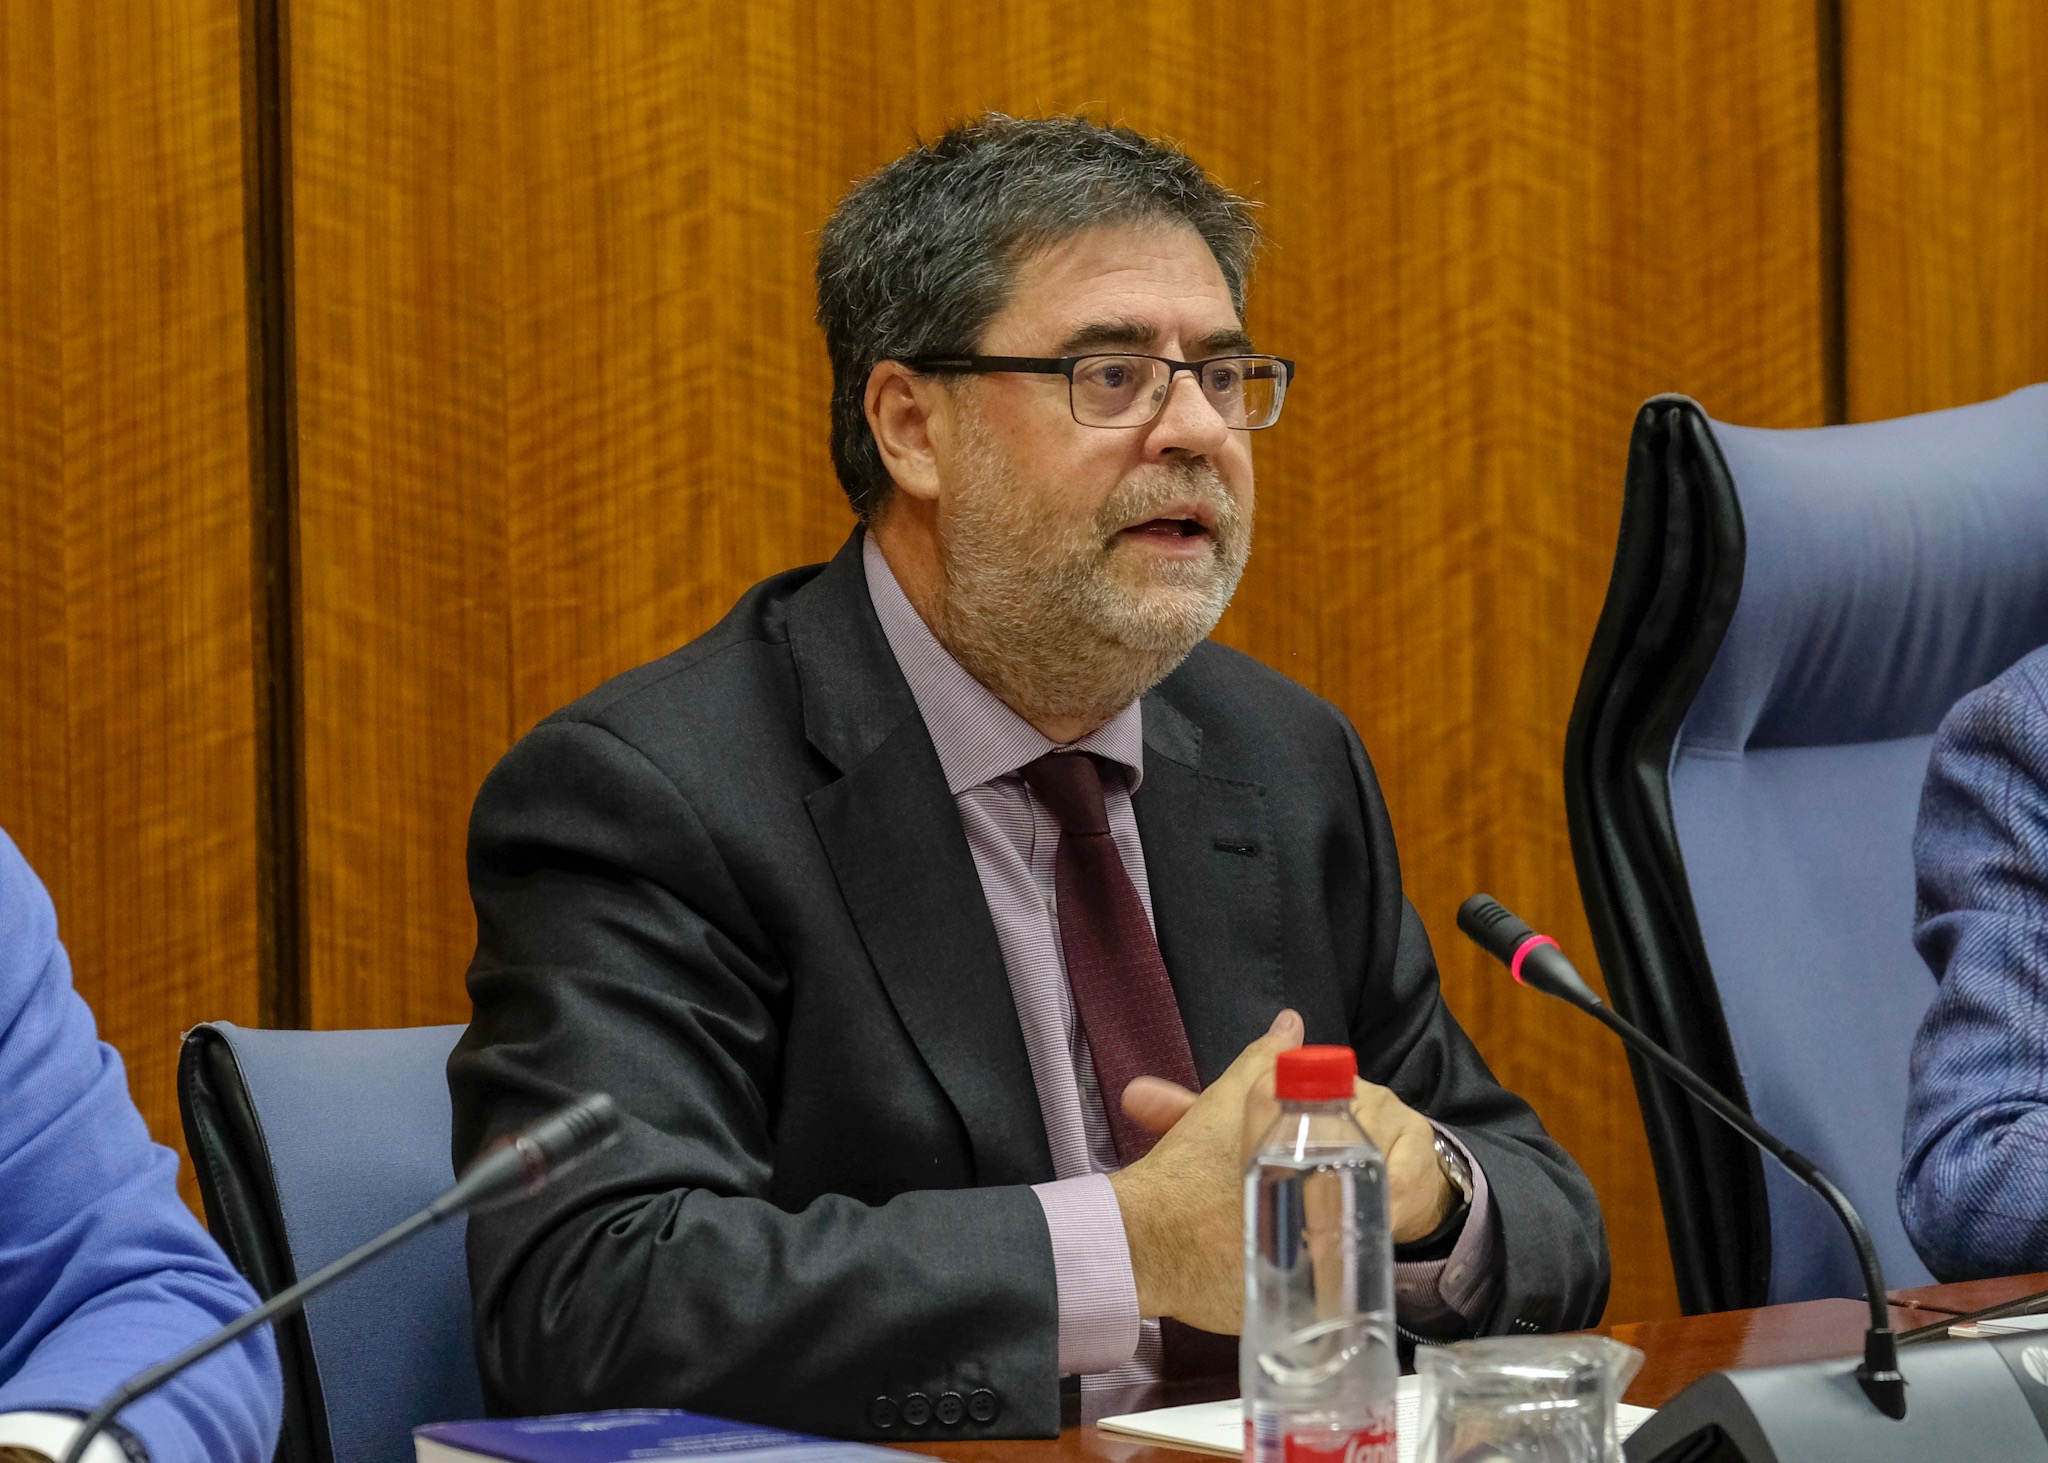  Antonio Lpez, presidente de la Cmara de Cuentas de Andaluca, que ha comparecido tanto en el Comisin de Hacienda como en la de Educacin